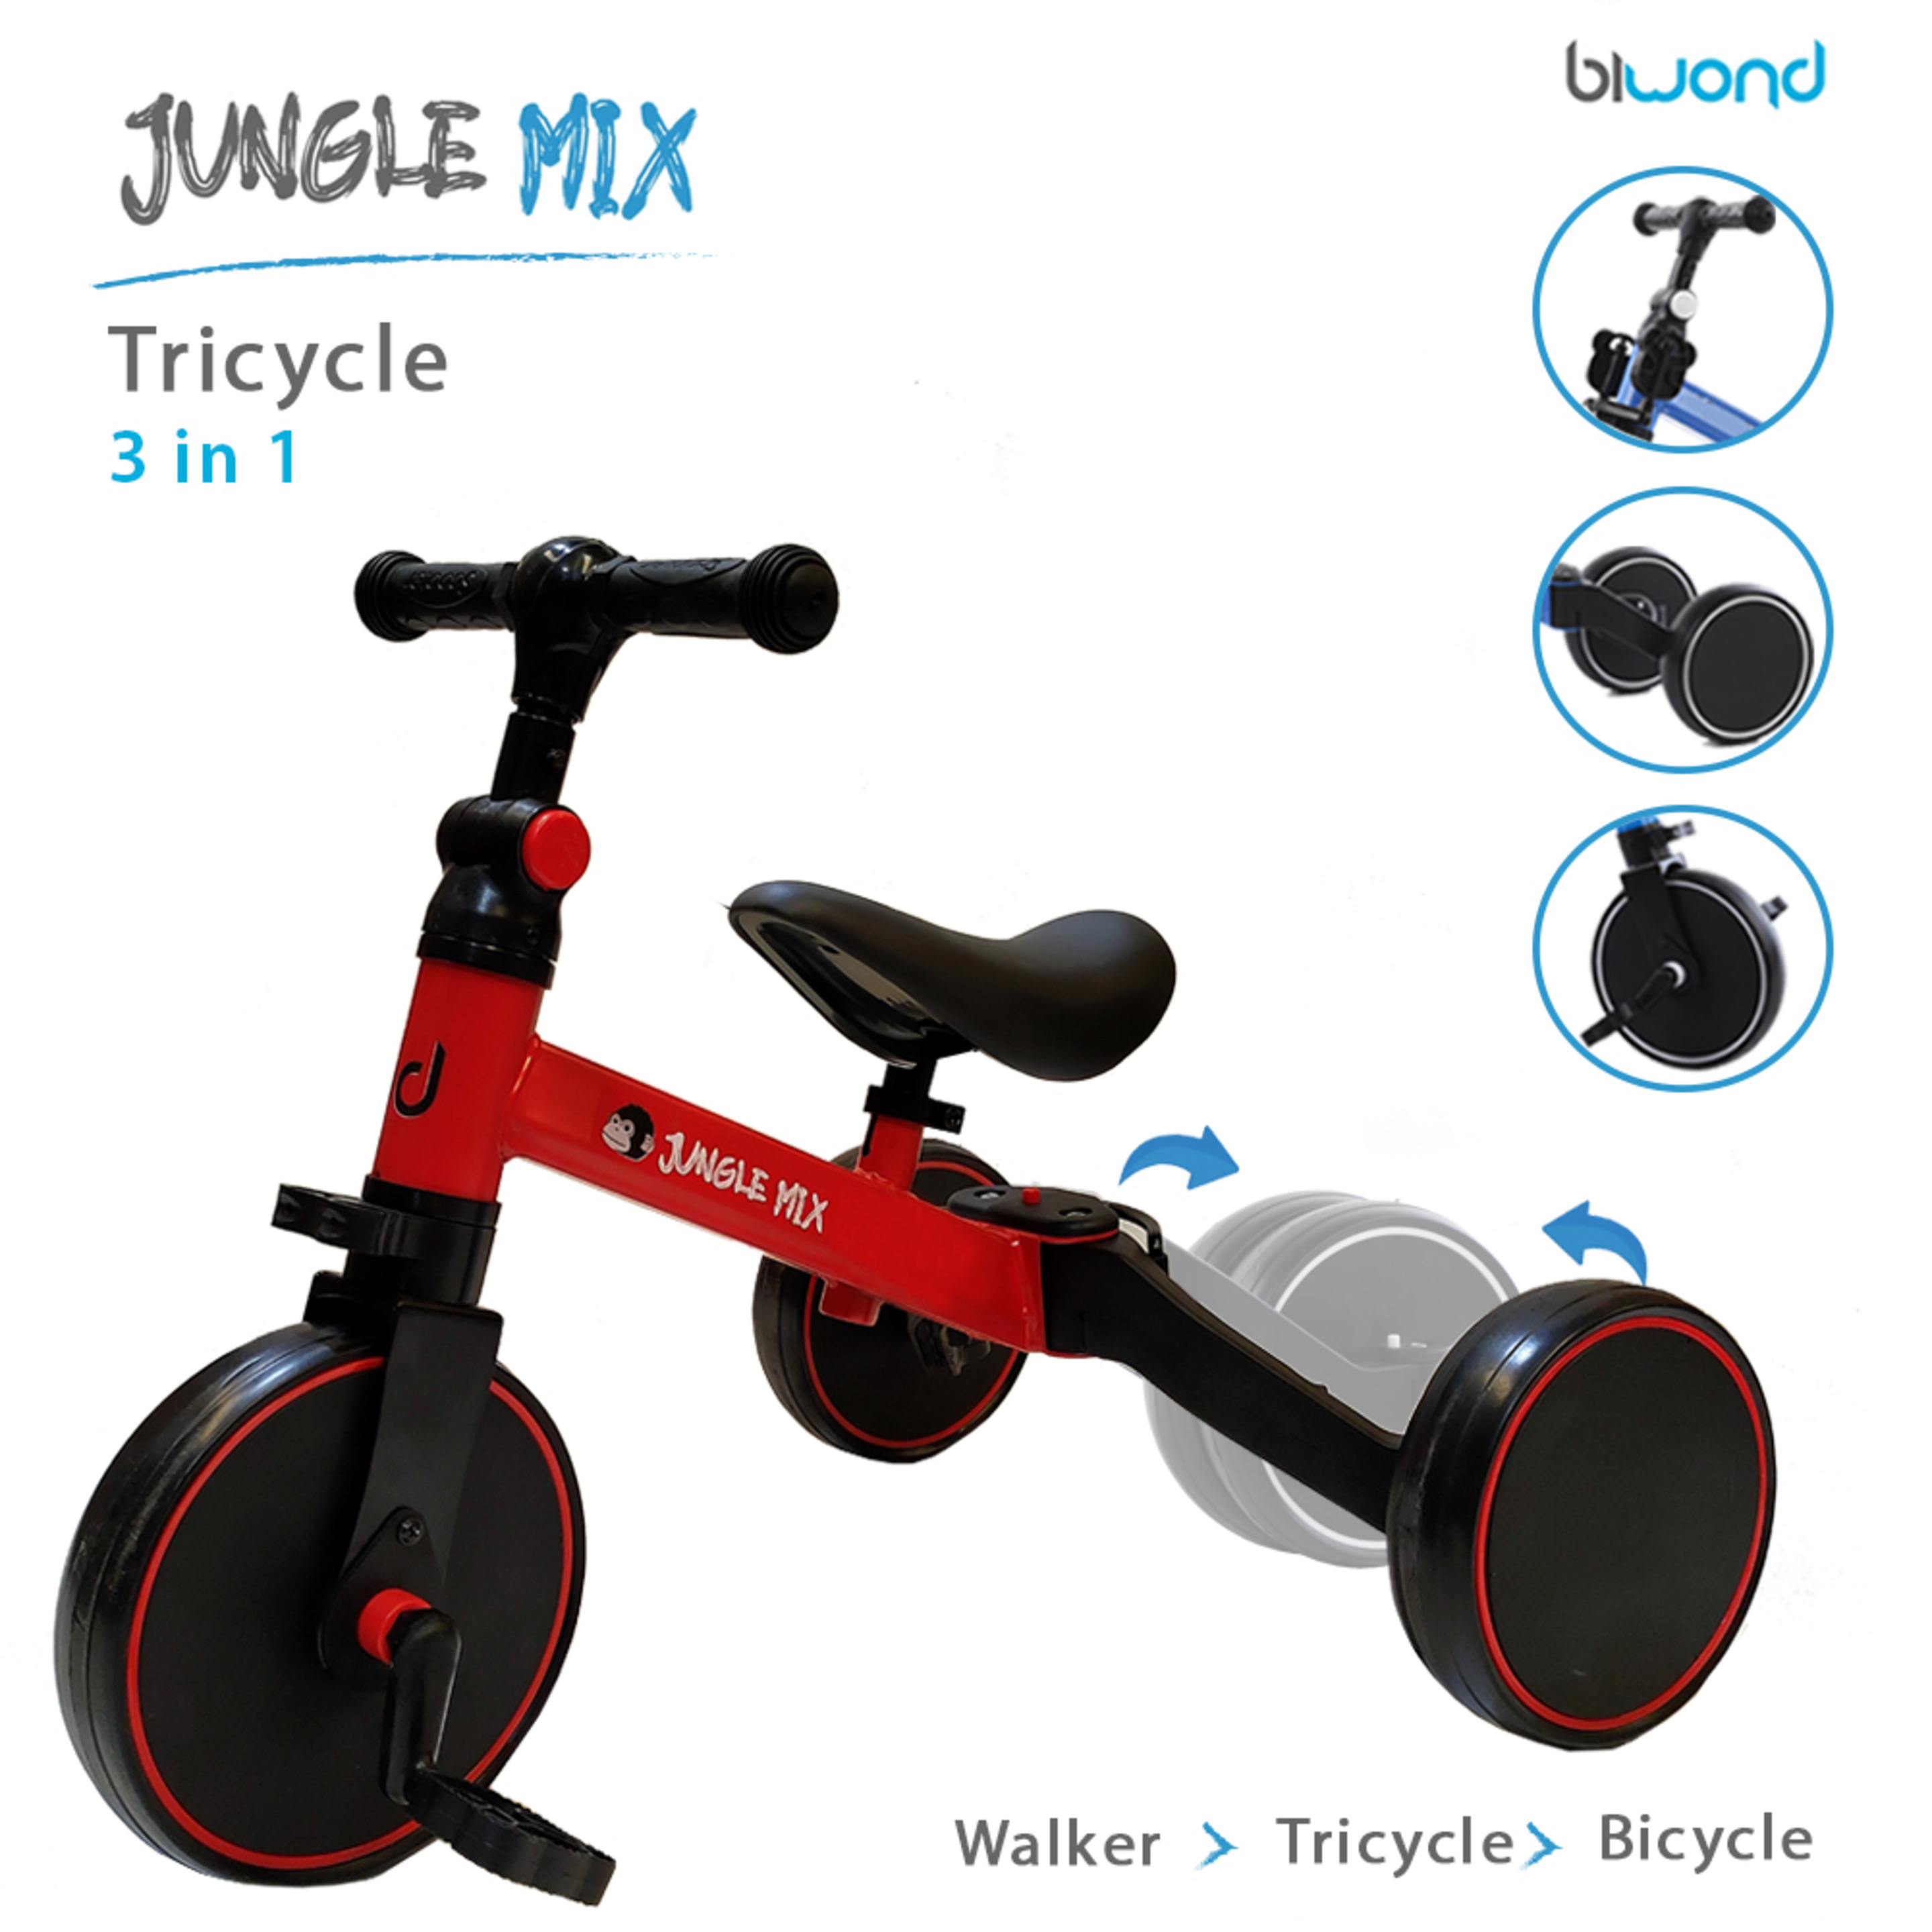 Triciclo Infantil Convertible 3 En 1 Jungle Mix Rojo Biwond